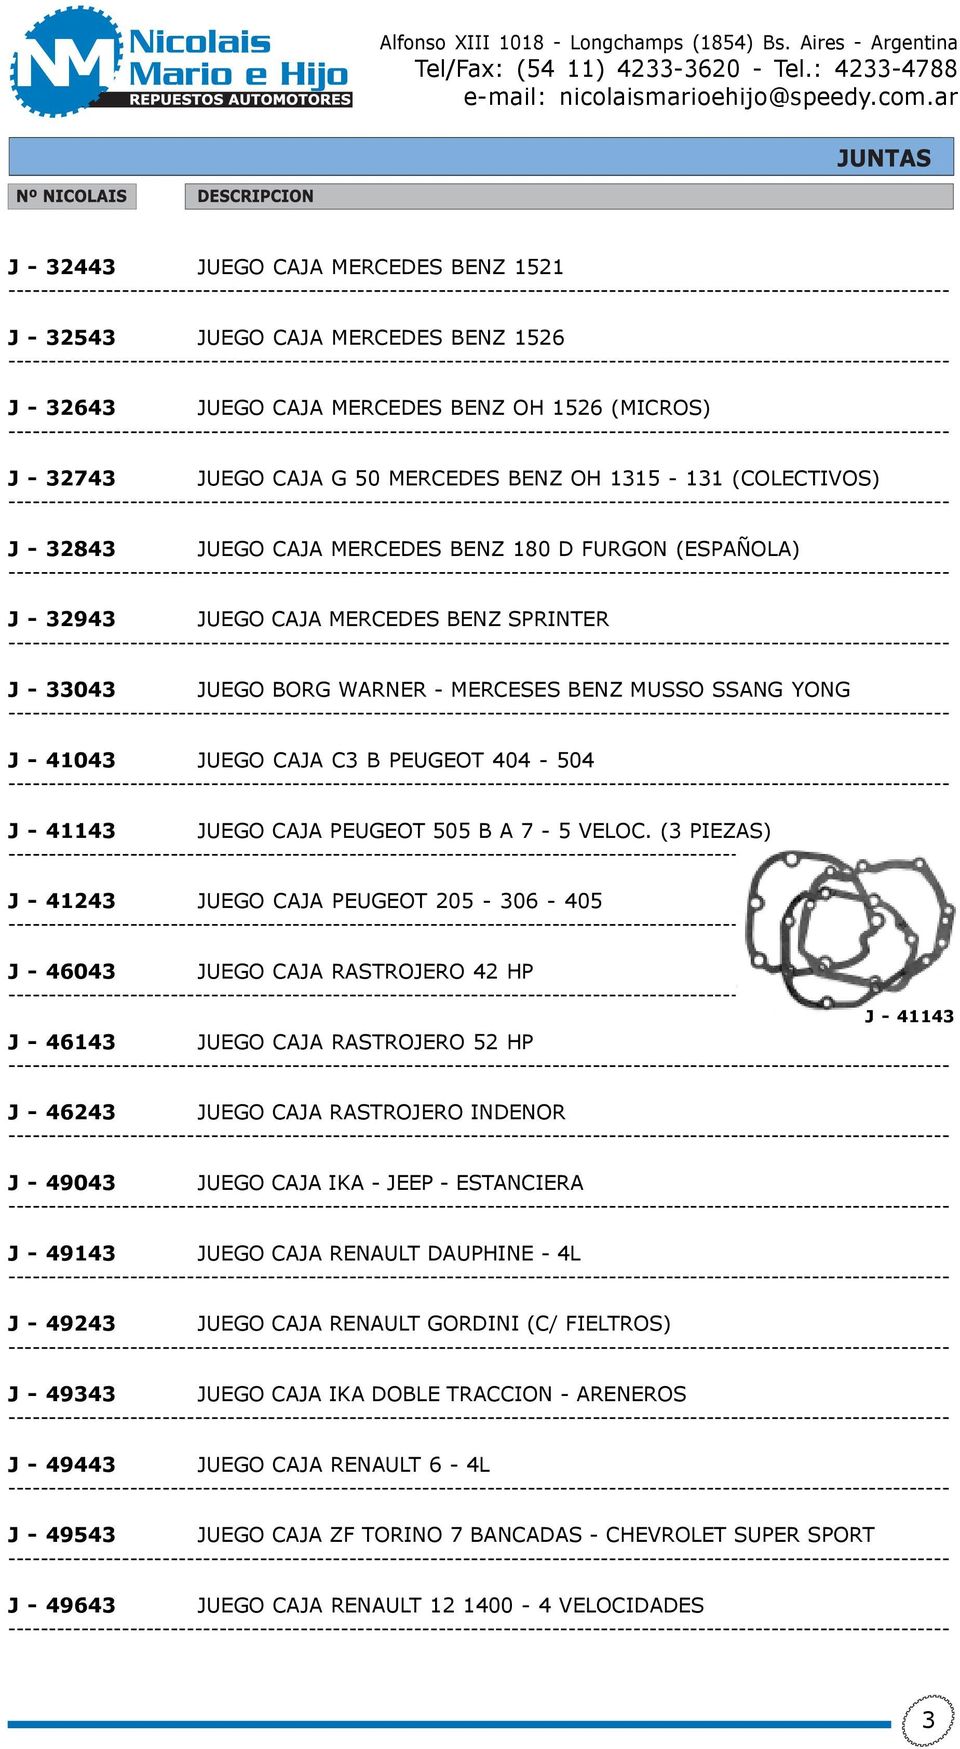 404-504 J - 41143 JUEGO CAJA PEUGEOT 505 B A 7-5 VELOC.